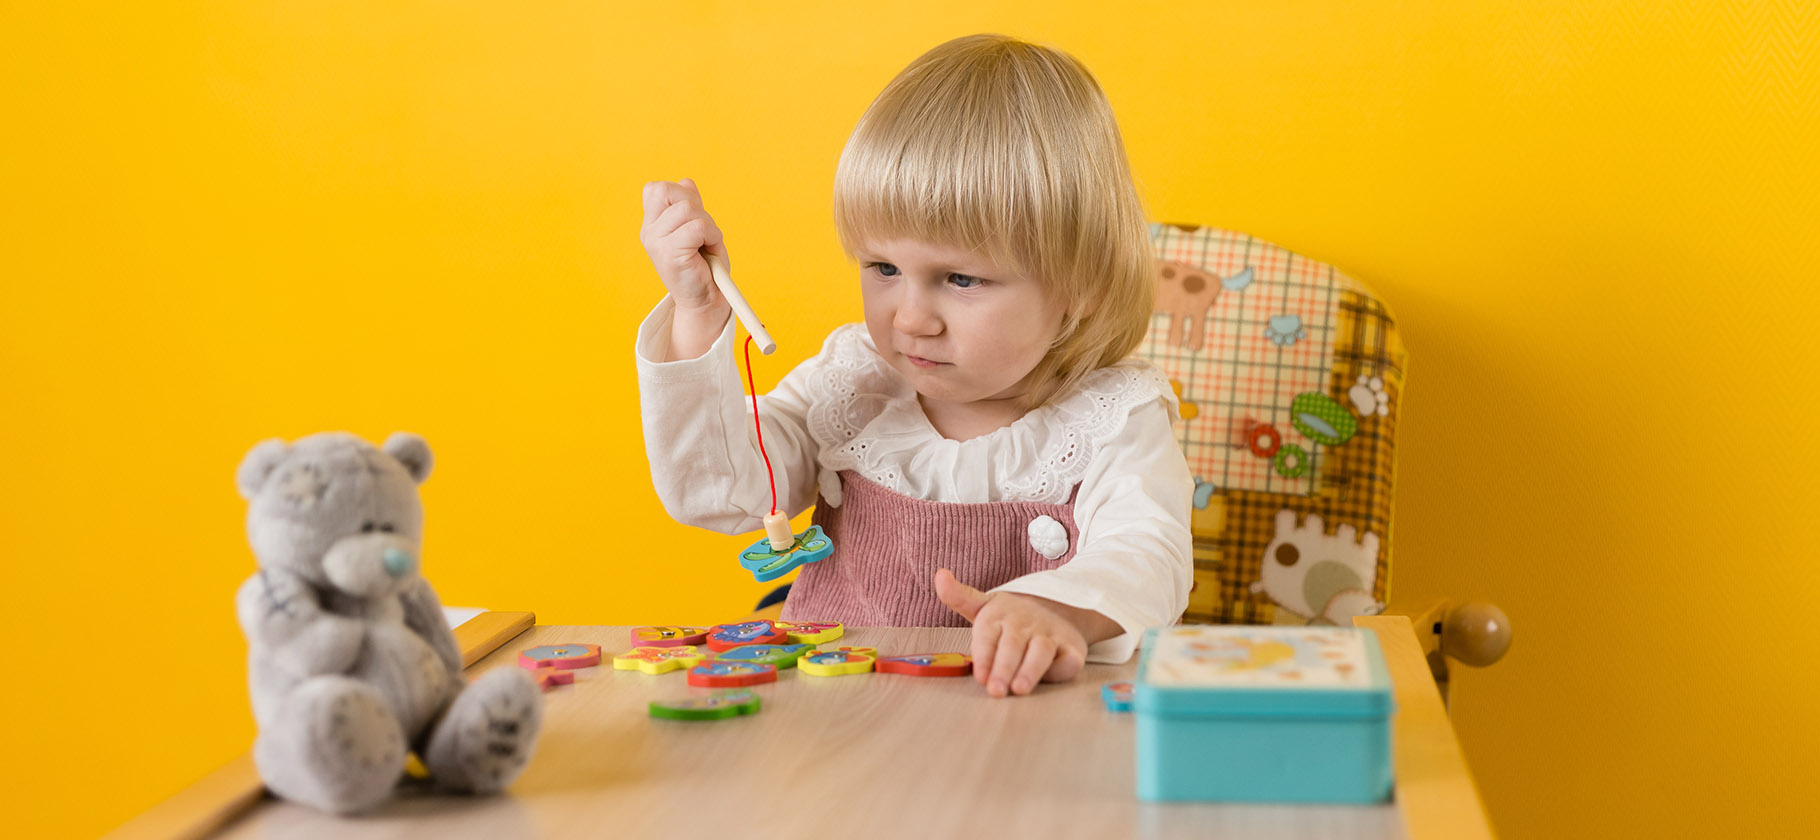 Развитие ребенка: в какие игрушки и когда играть? | hb-crm.ru